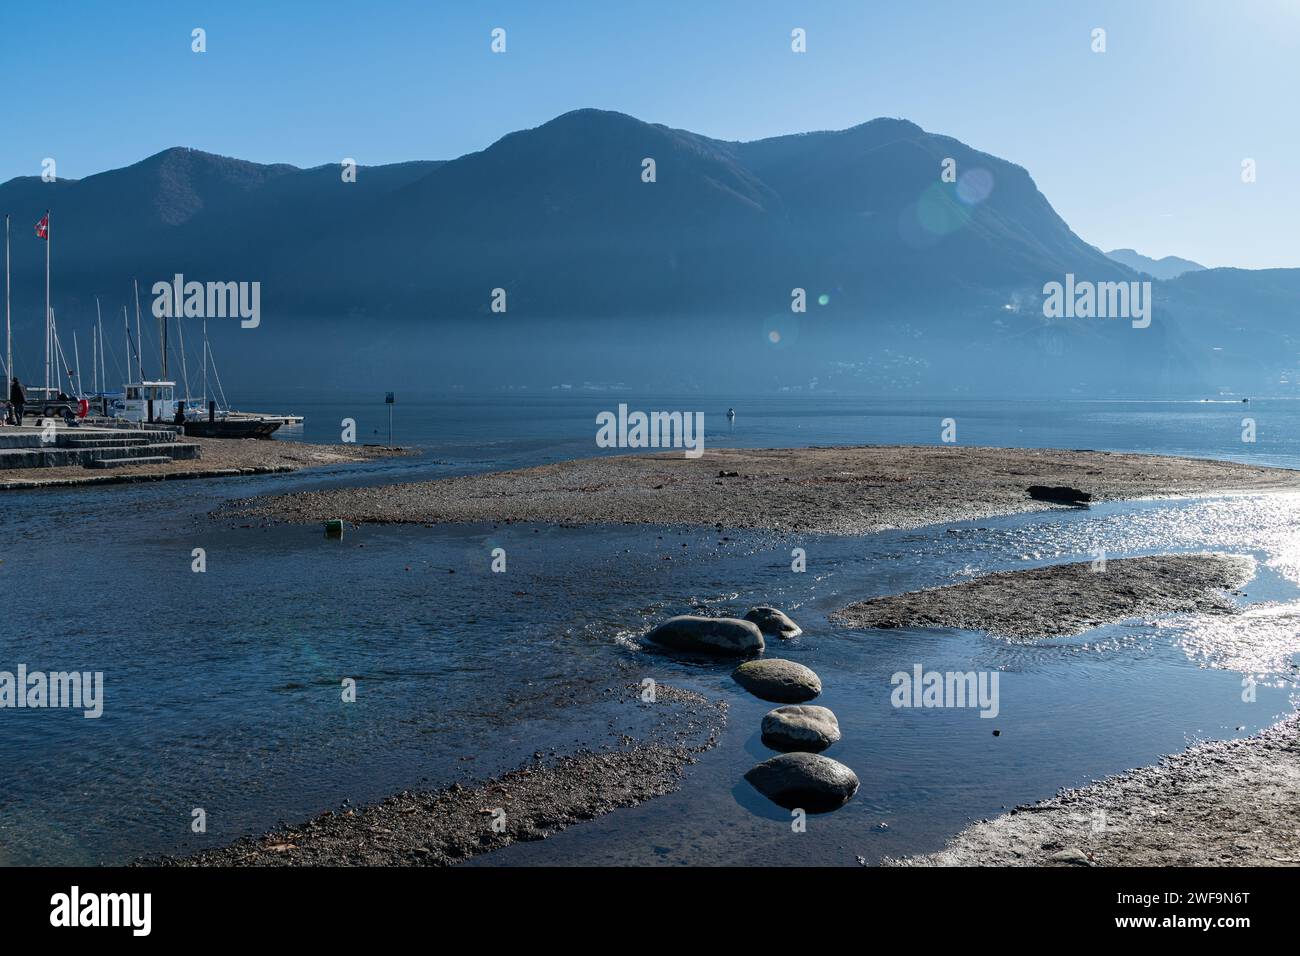 The sandy shore / beach of Lake Lugano in Switzerland Stock Photo